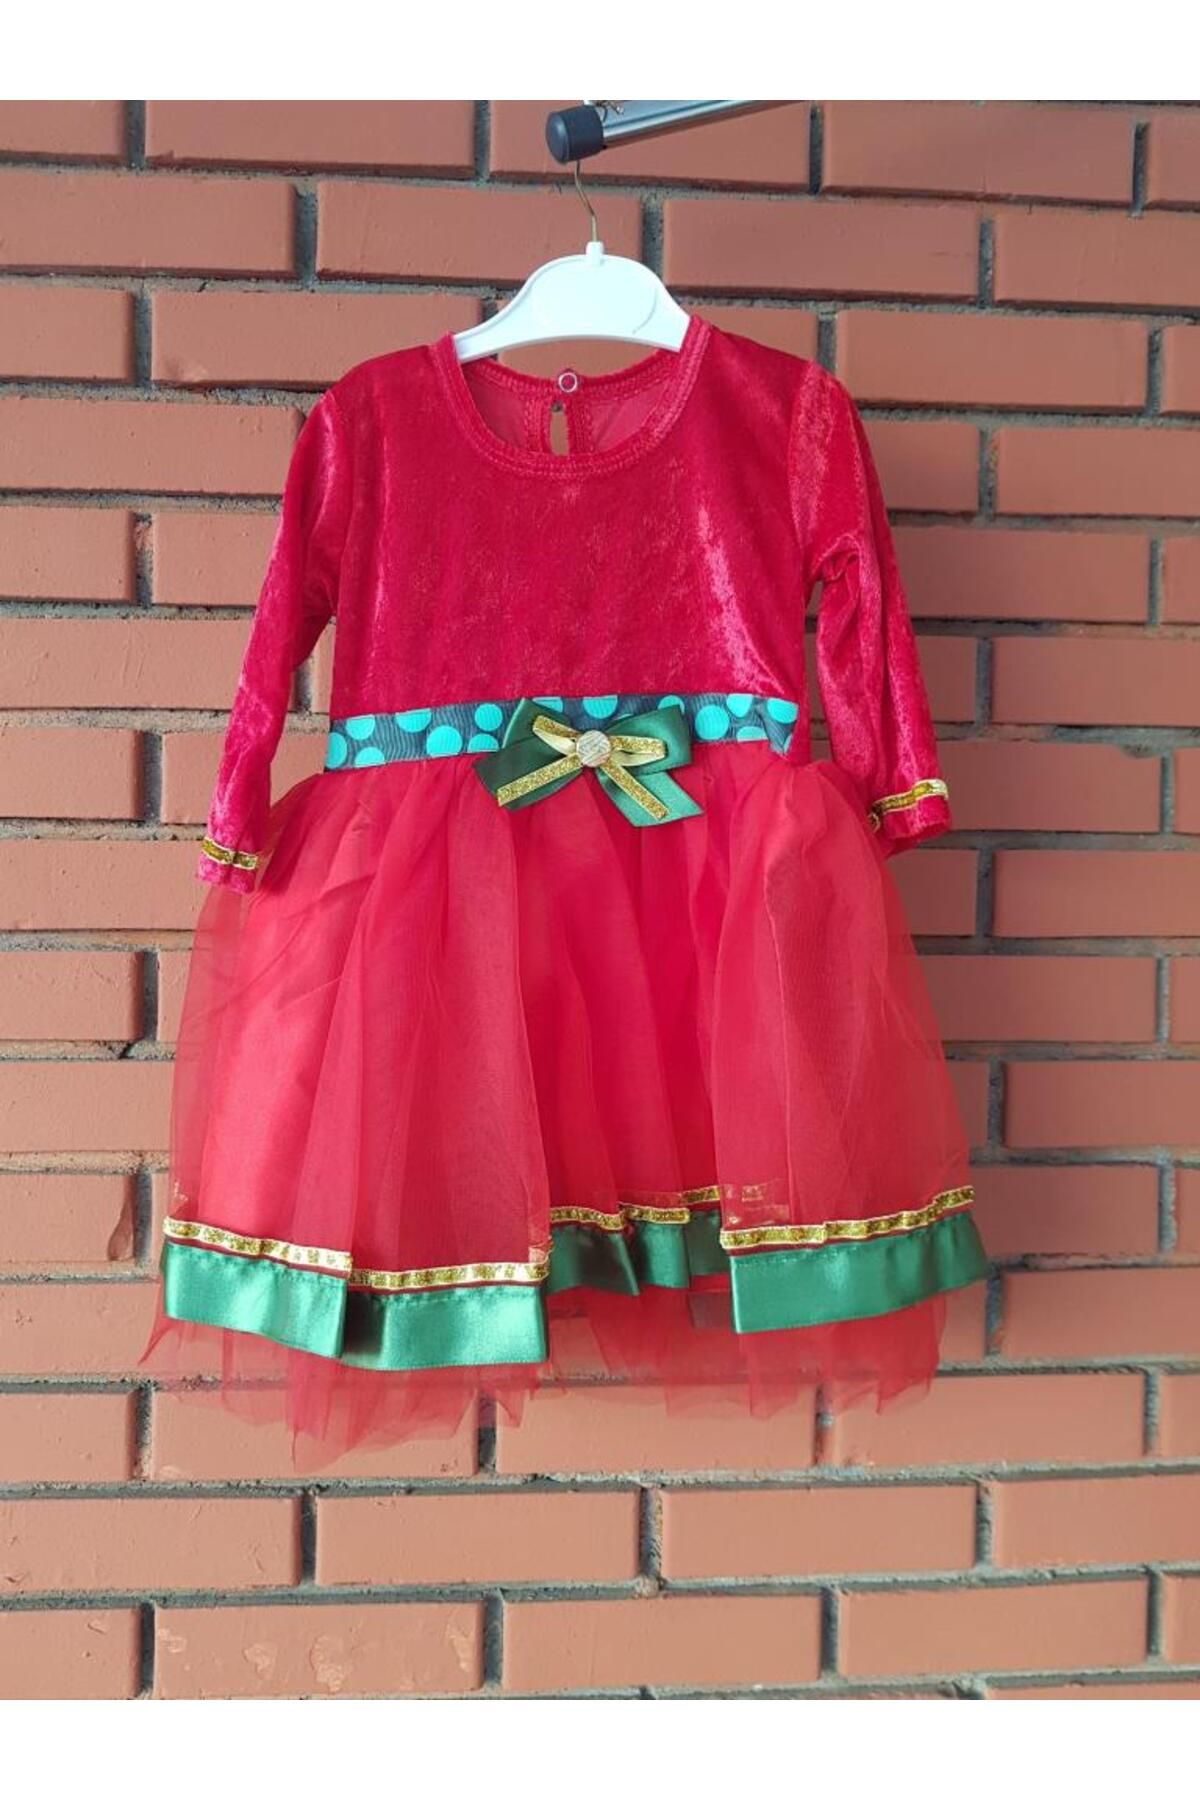 Lizpo Decor Kız Çocuk Yılbaşı Elbisesi 24 Aylık